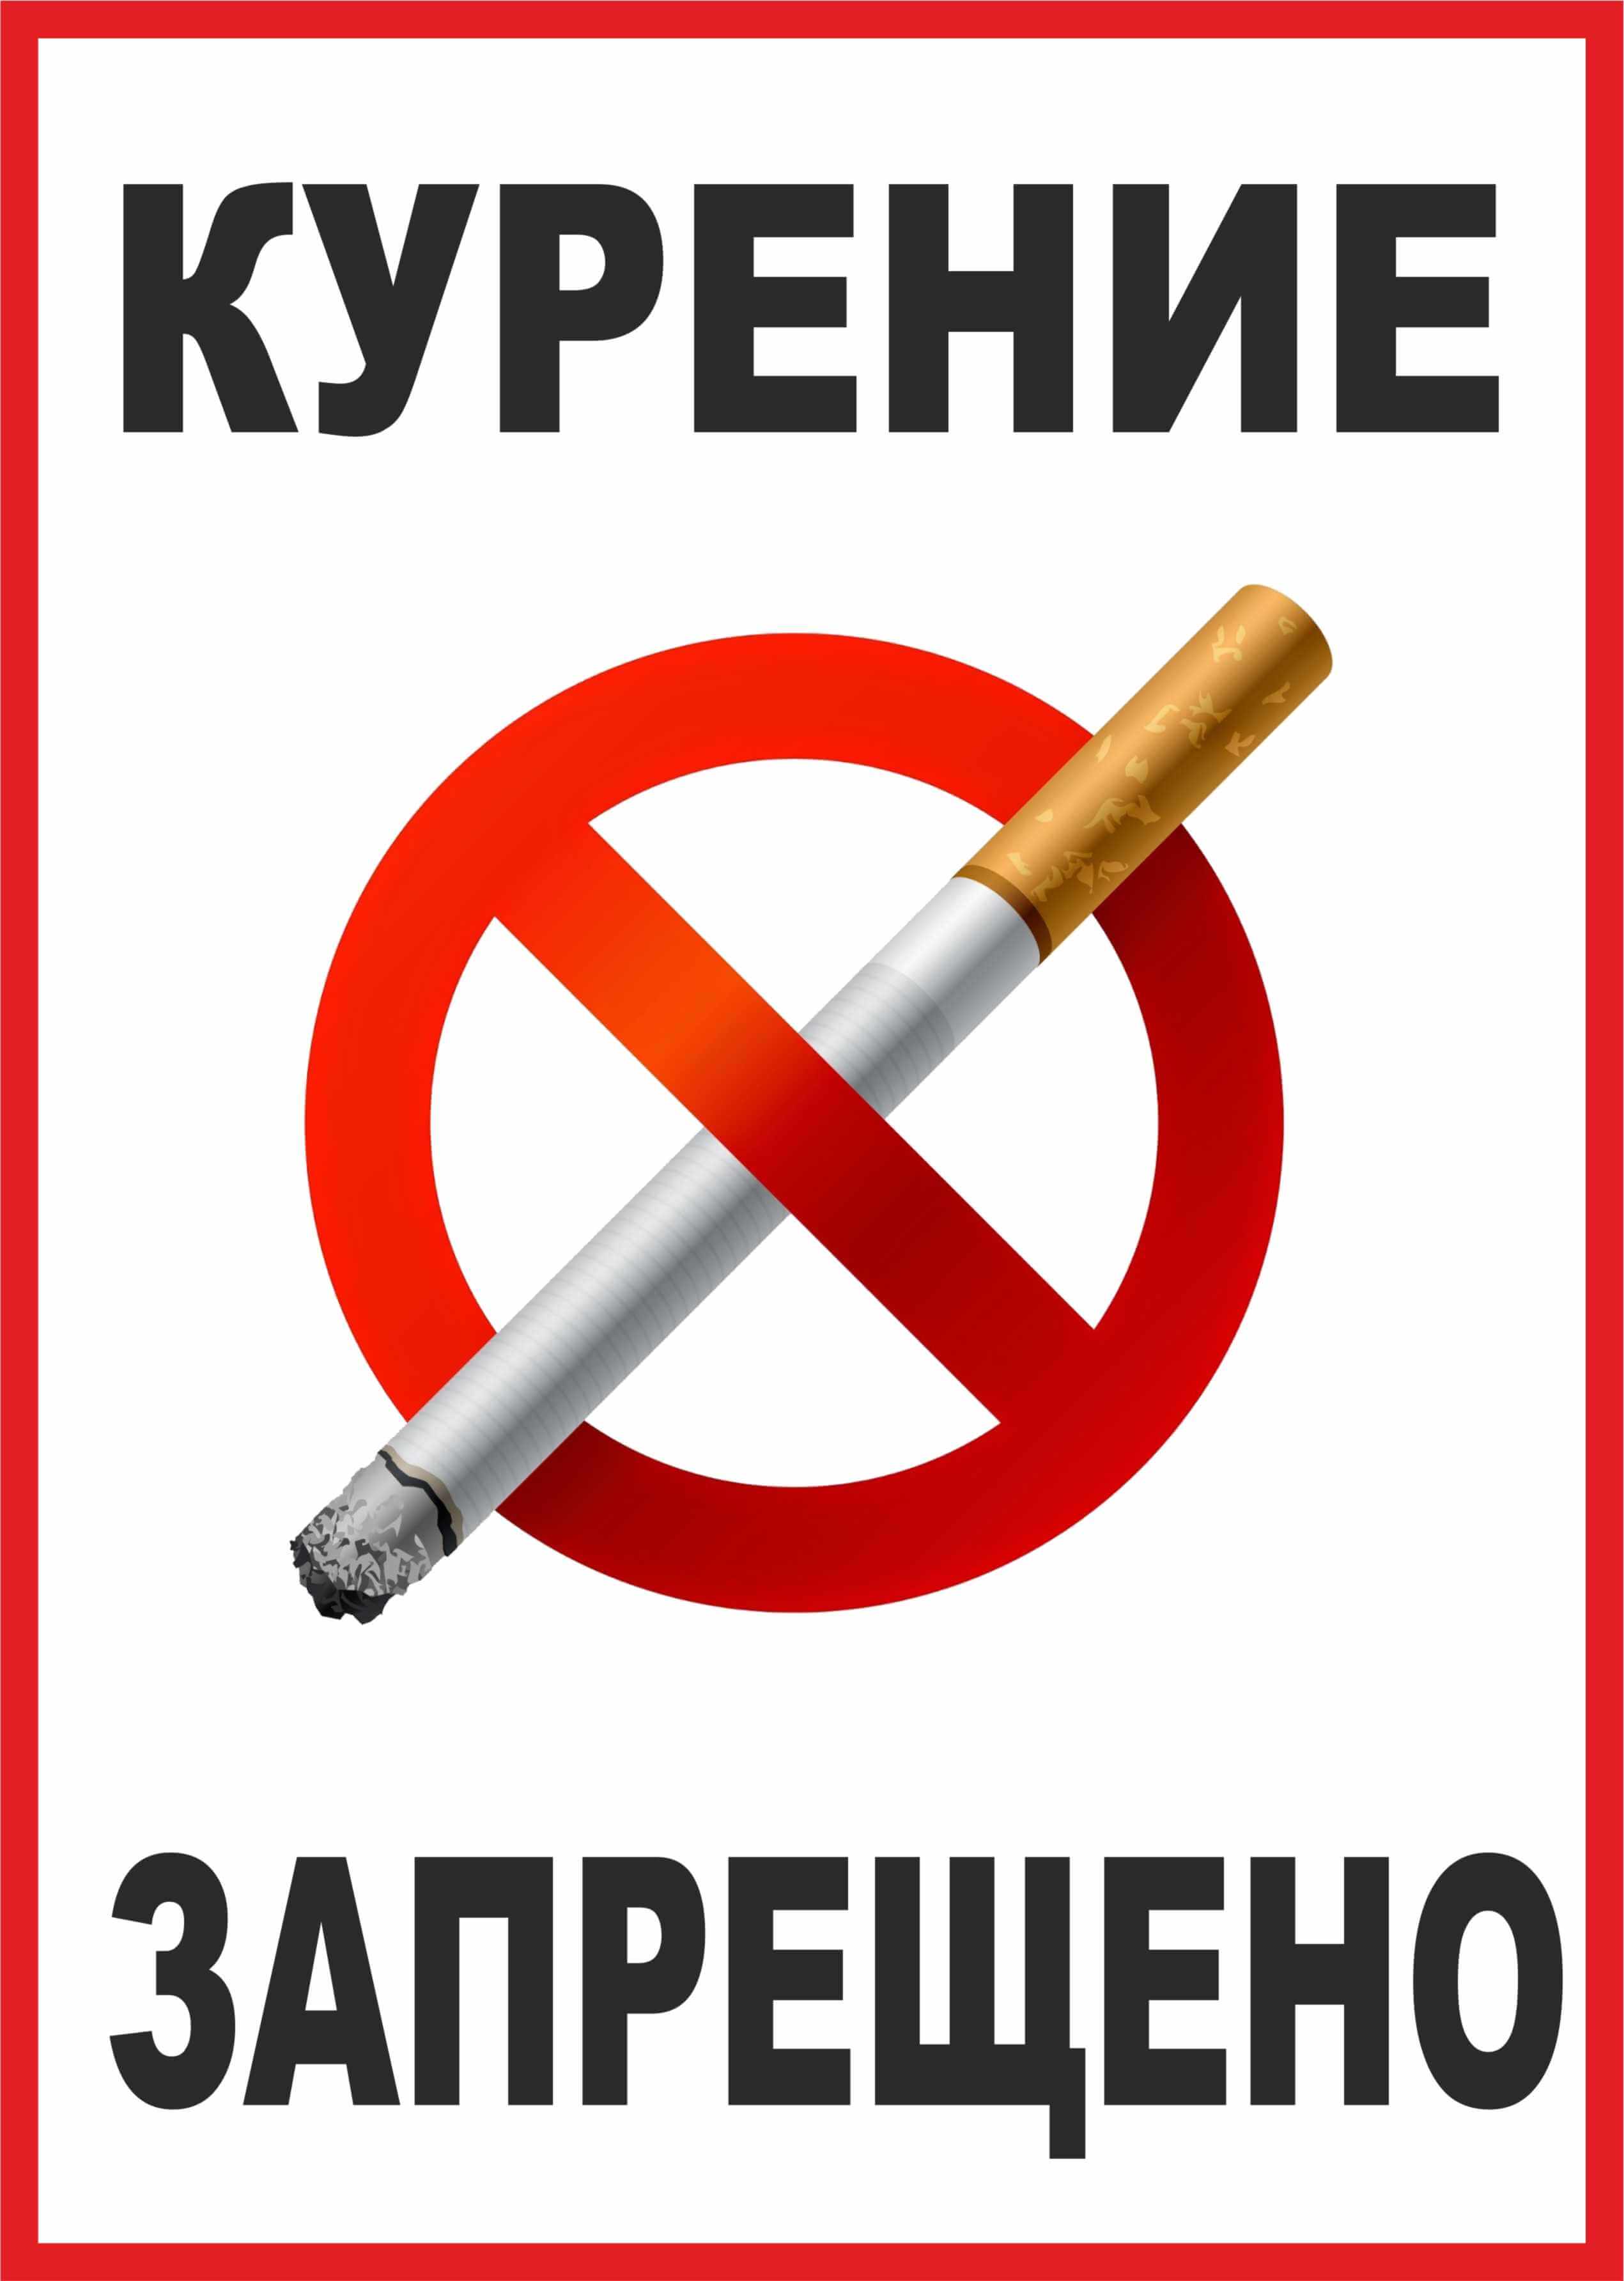 Курение запрещено - Знак с перечеркнутой сигаретой